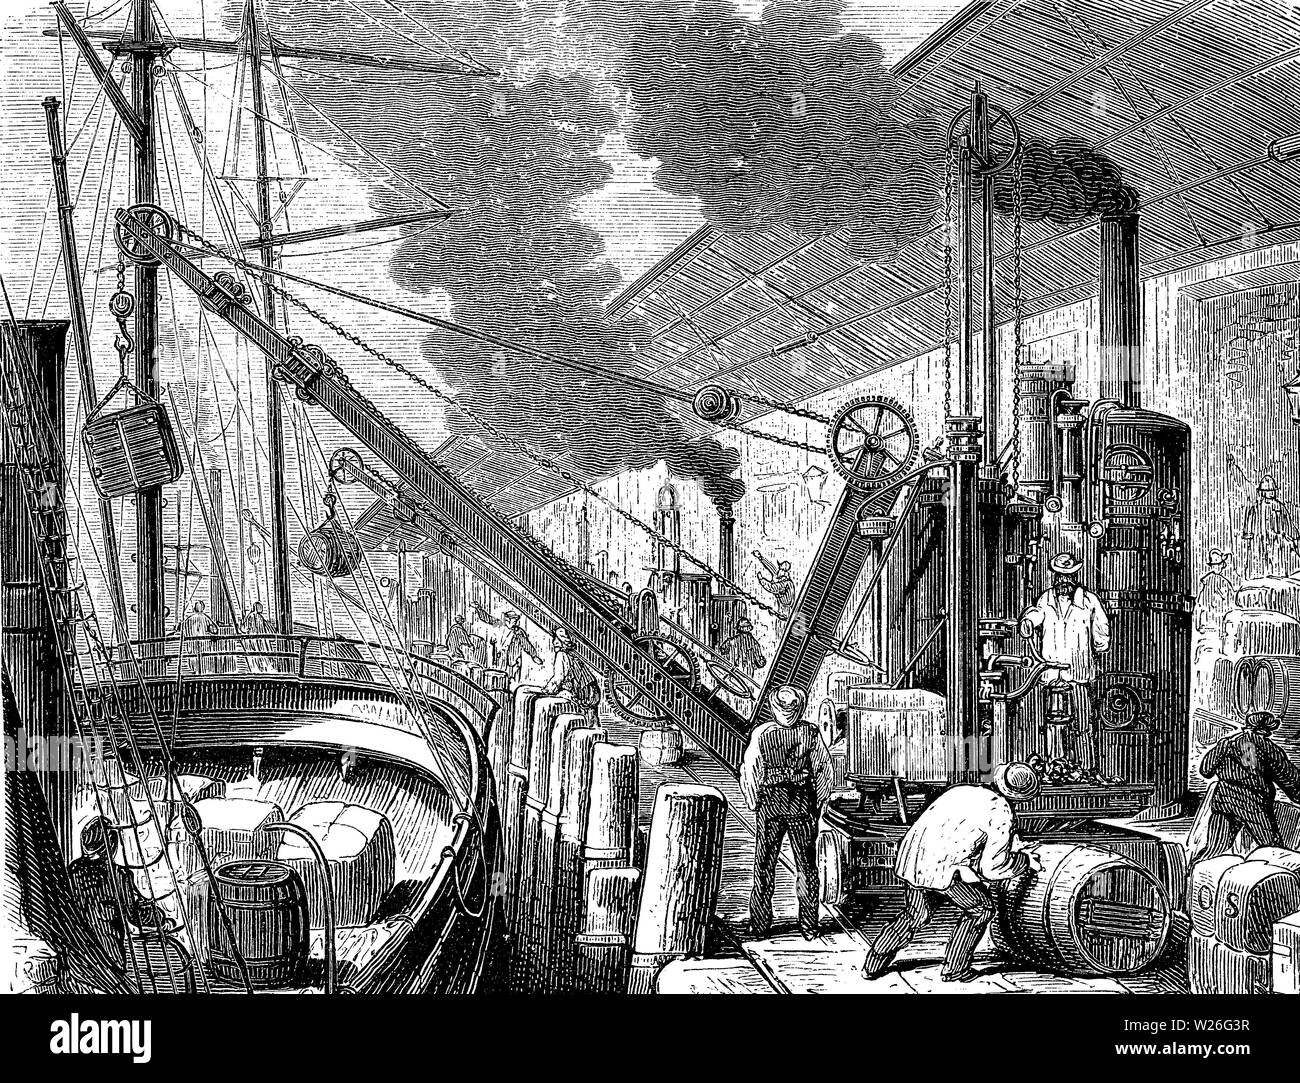 Grues à vapeur au travail chargement et déchargement de bateaux à la jetée du port de Hambourg, 19e siècle Banque D'Images